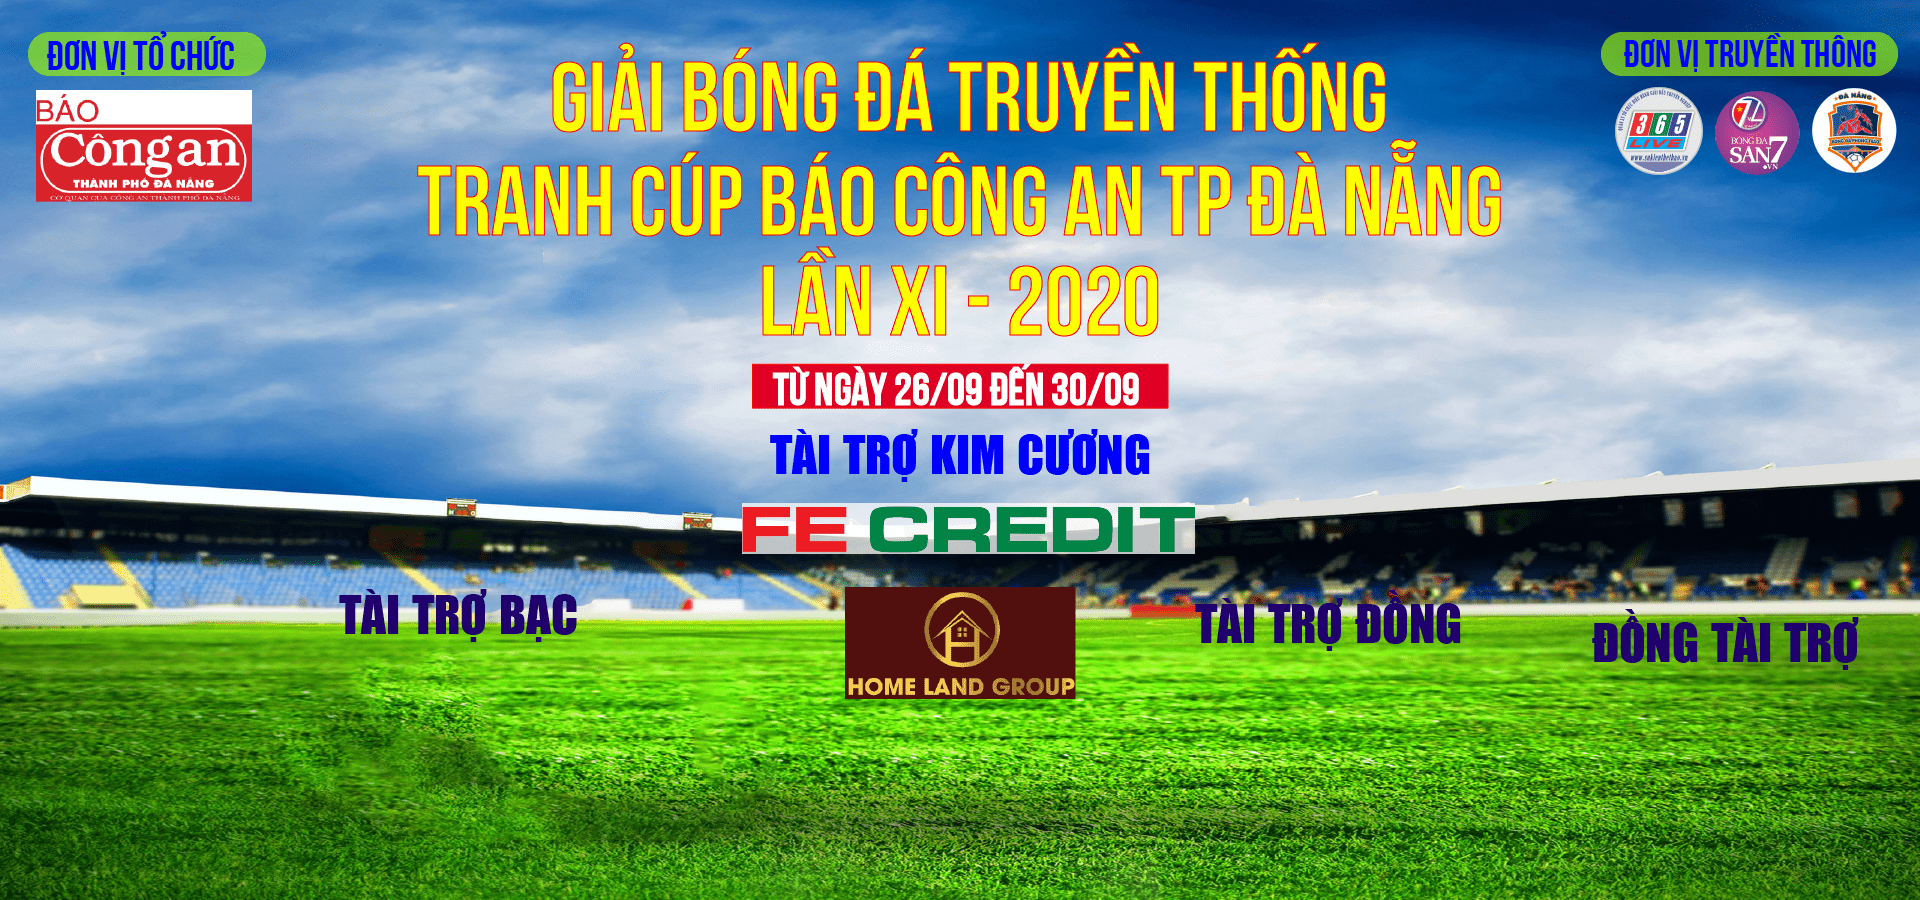 Giải bóng đá truyền thống tranh cúp Báo Công An TP Đà Nẵng lần XI năm 2020